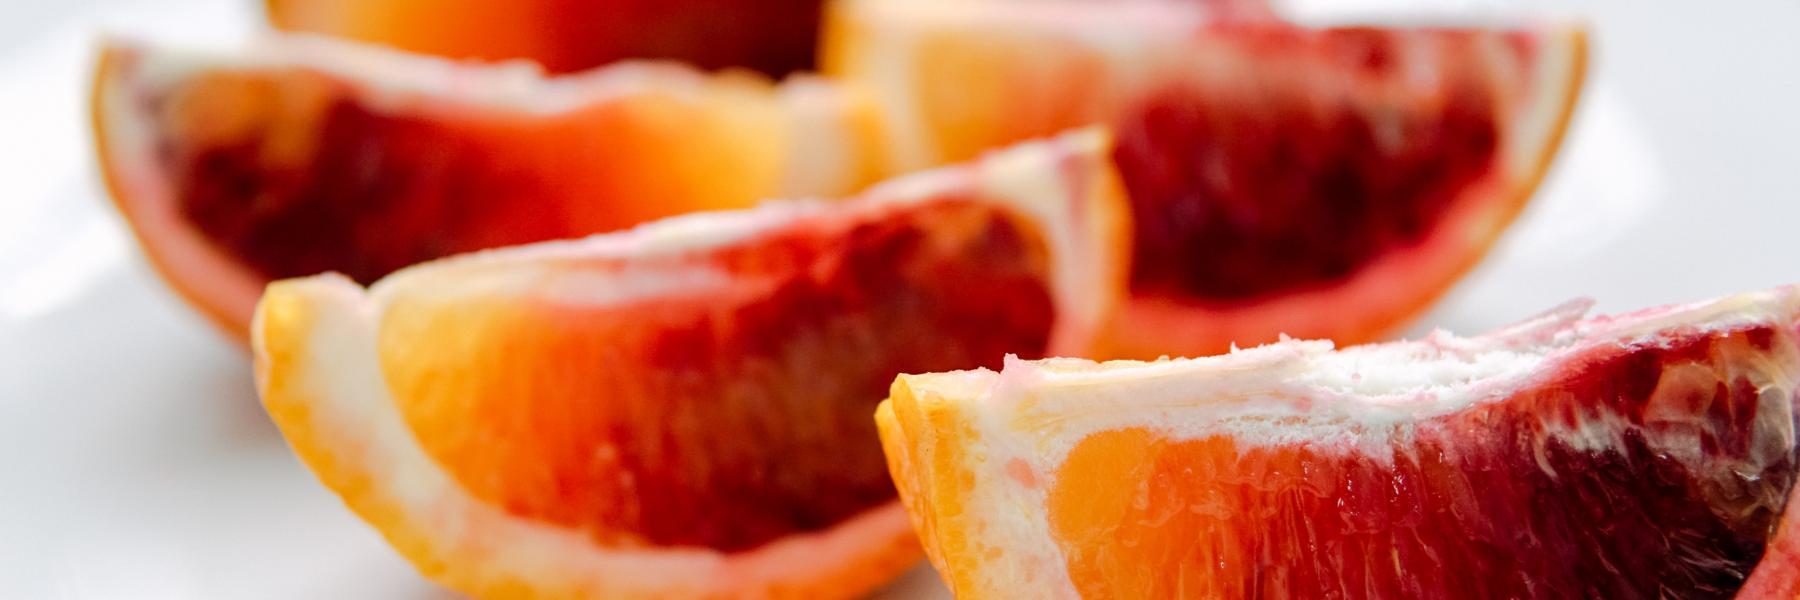  7 من فوائد البرتقال الأحمر الرائعة..تعرفي عليها